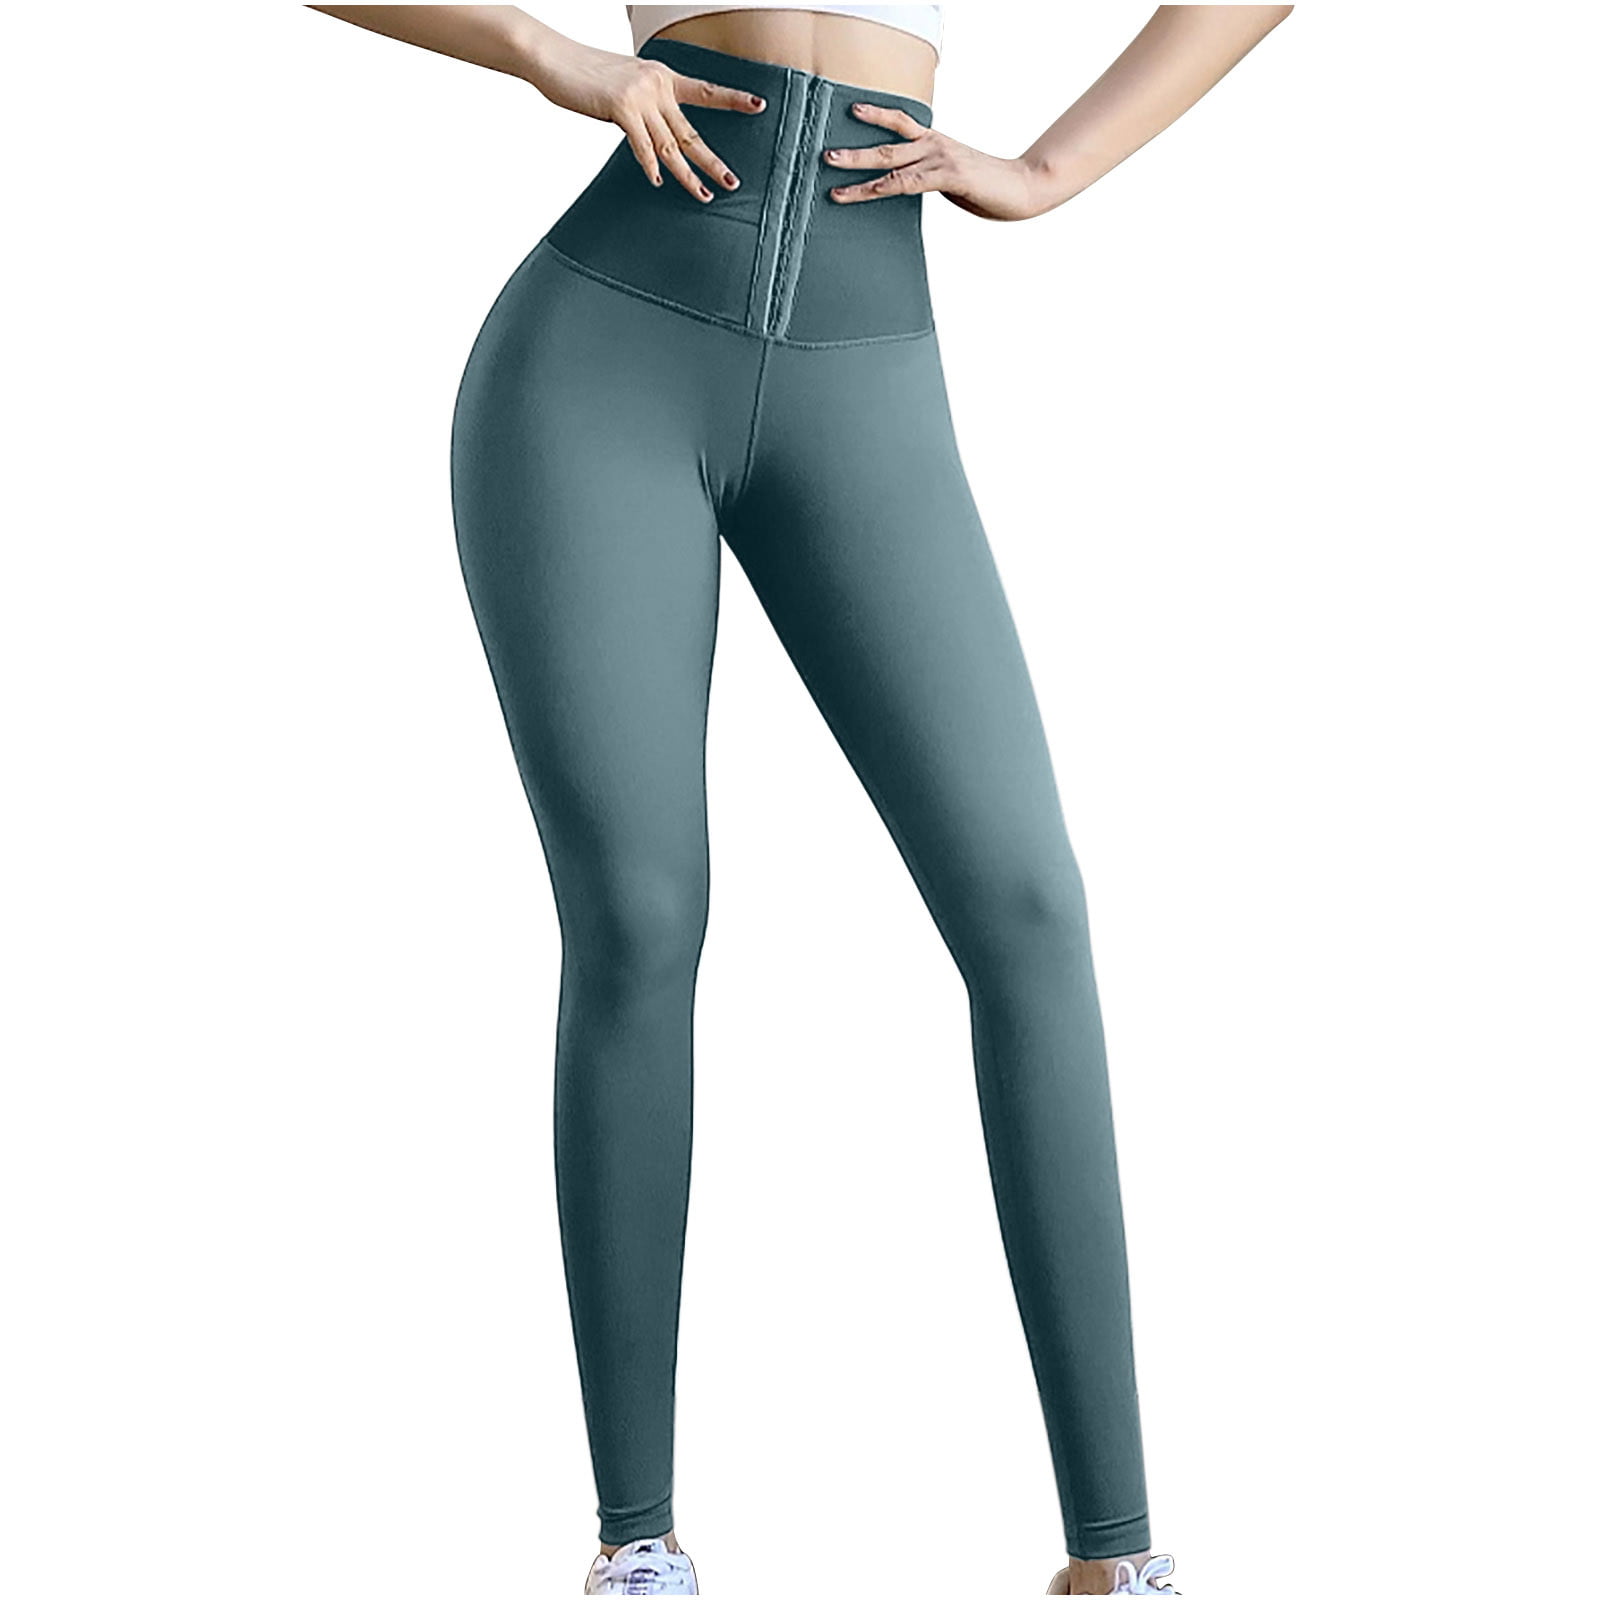 YWDJ Tights for Women Leggings Dressy Sport Fitness Yoga Pants